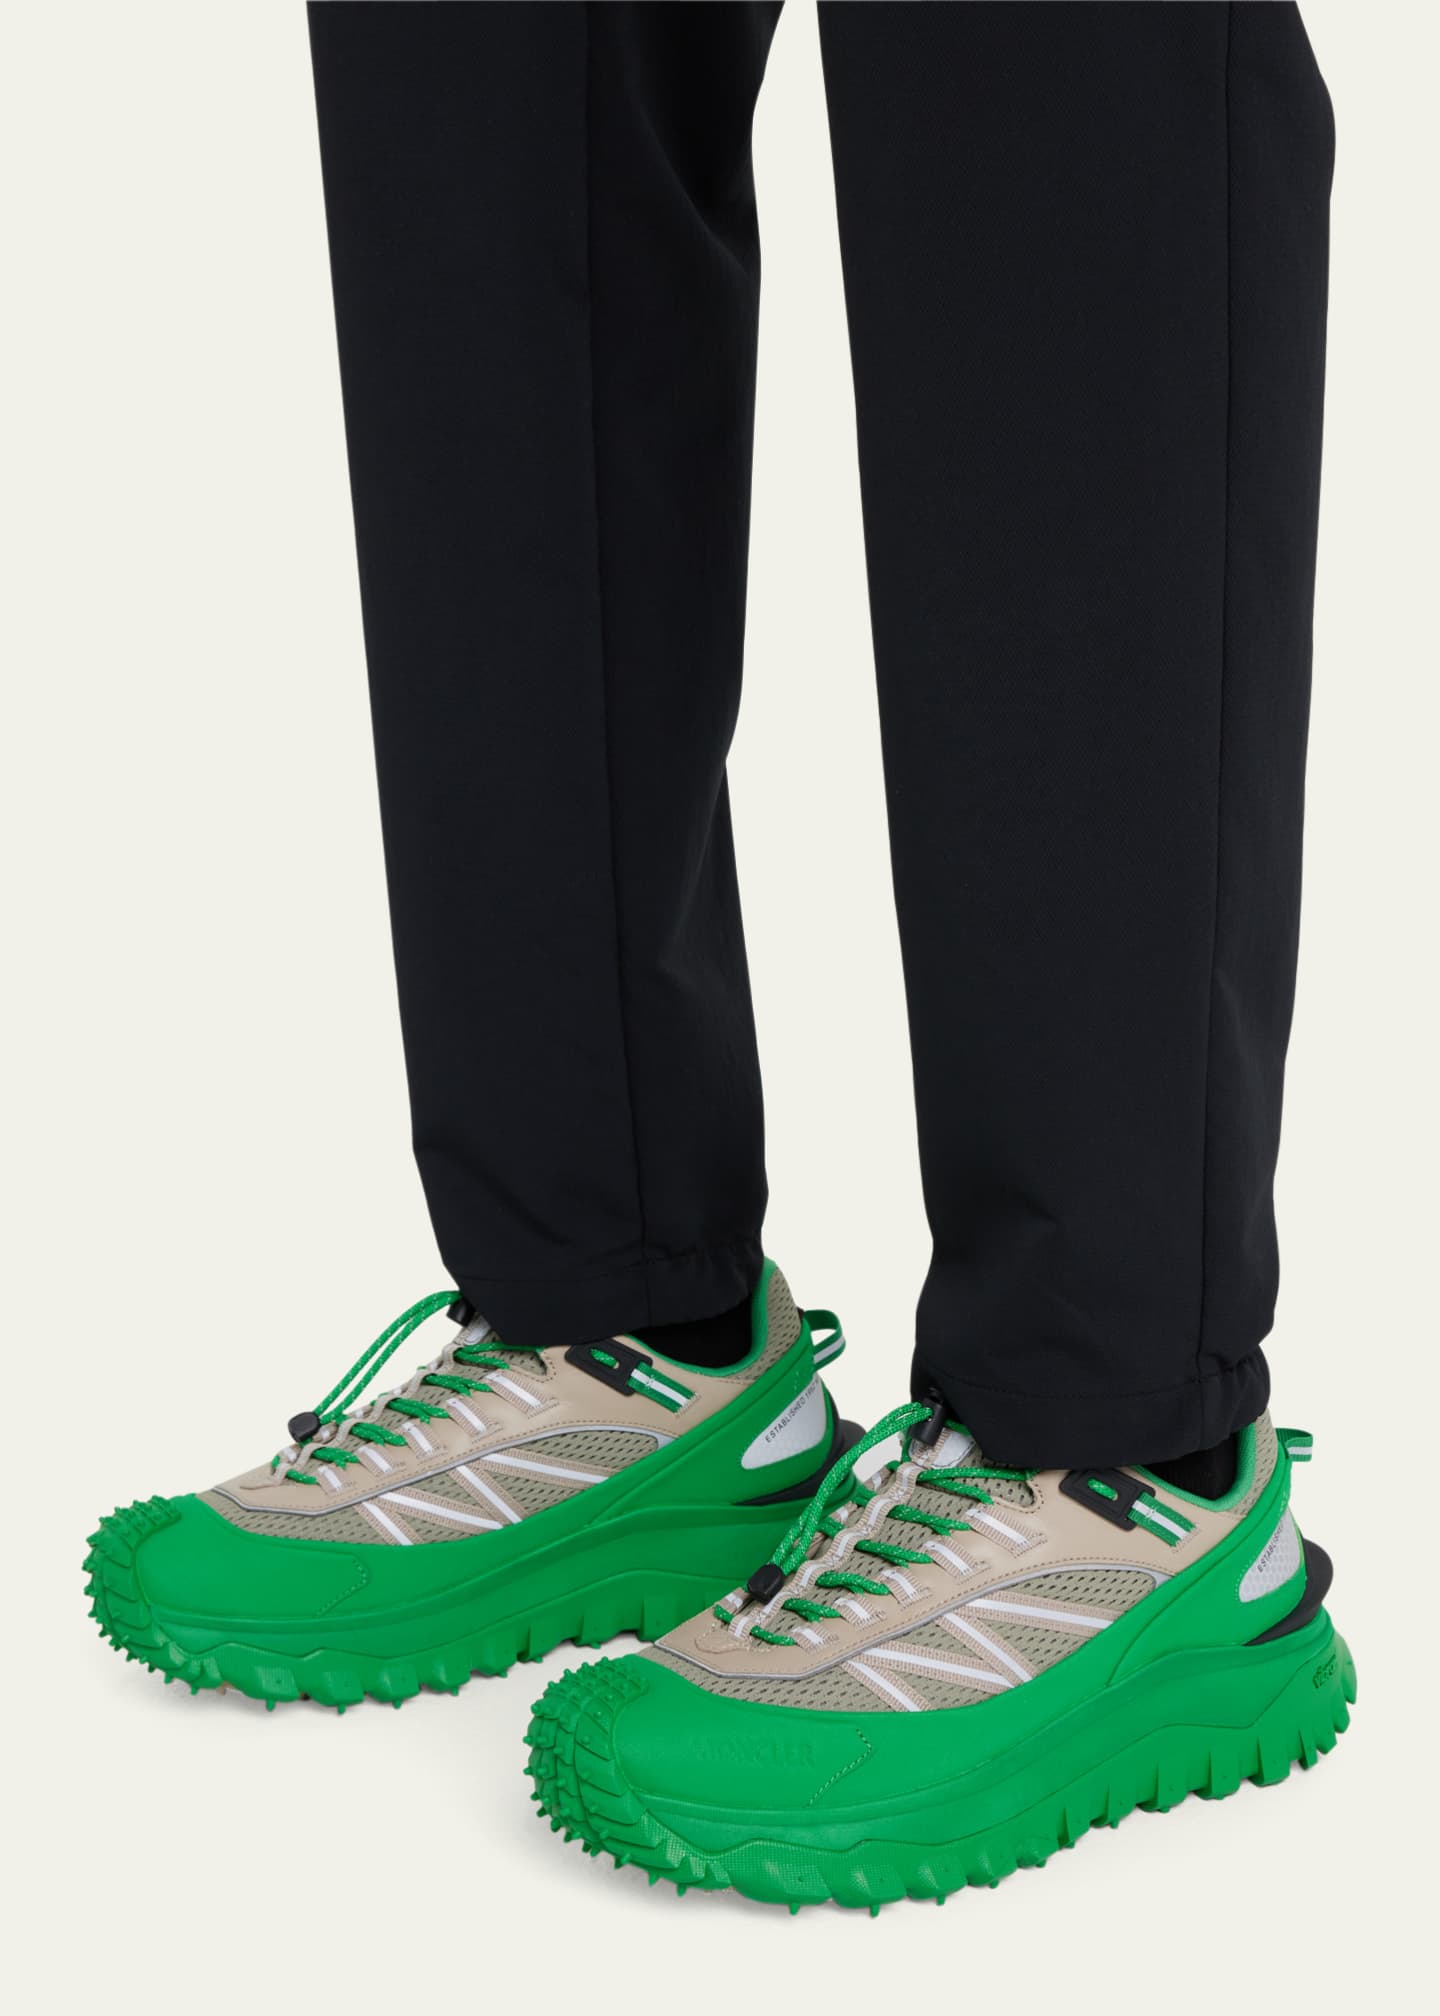 Moncler Men's Trailgrip Vibram Tread Low-Top Sneakers - Bergdorf Goodman